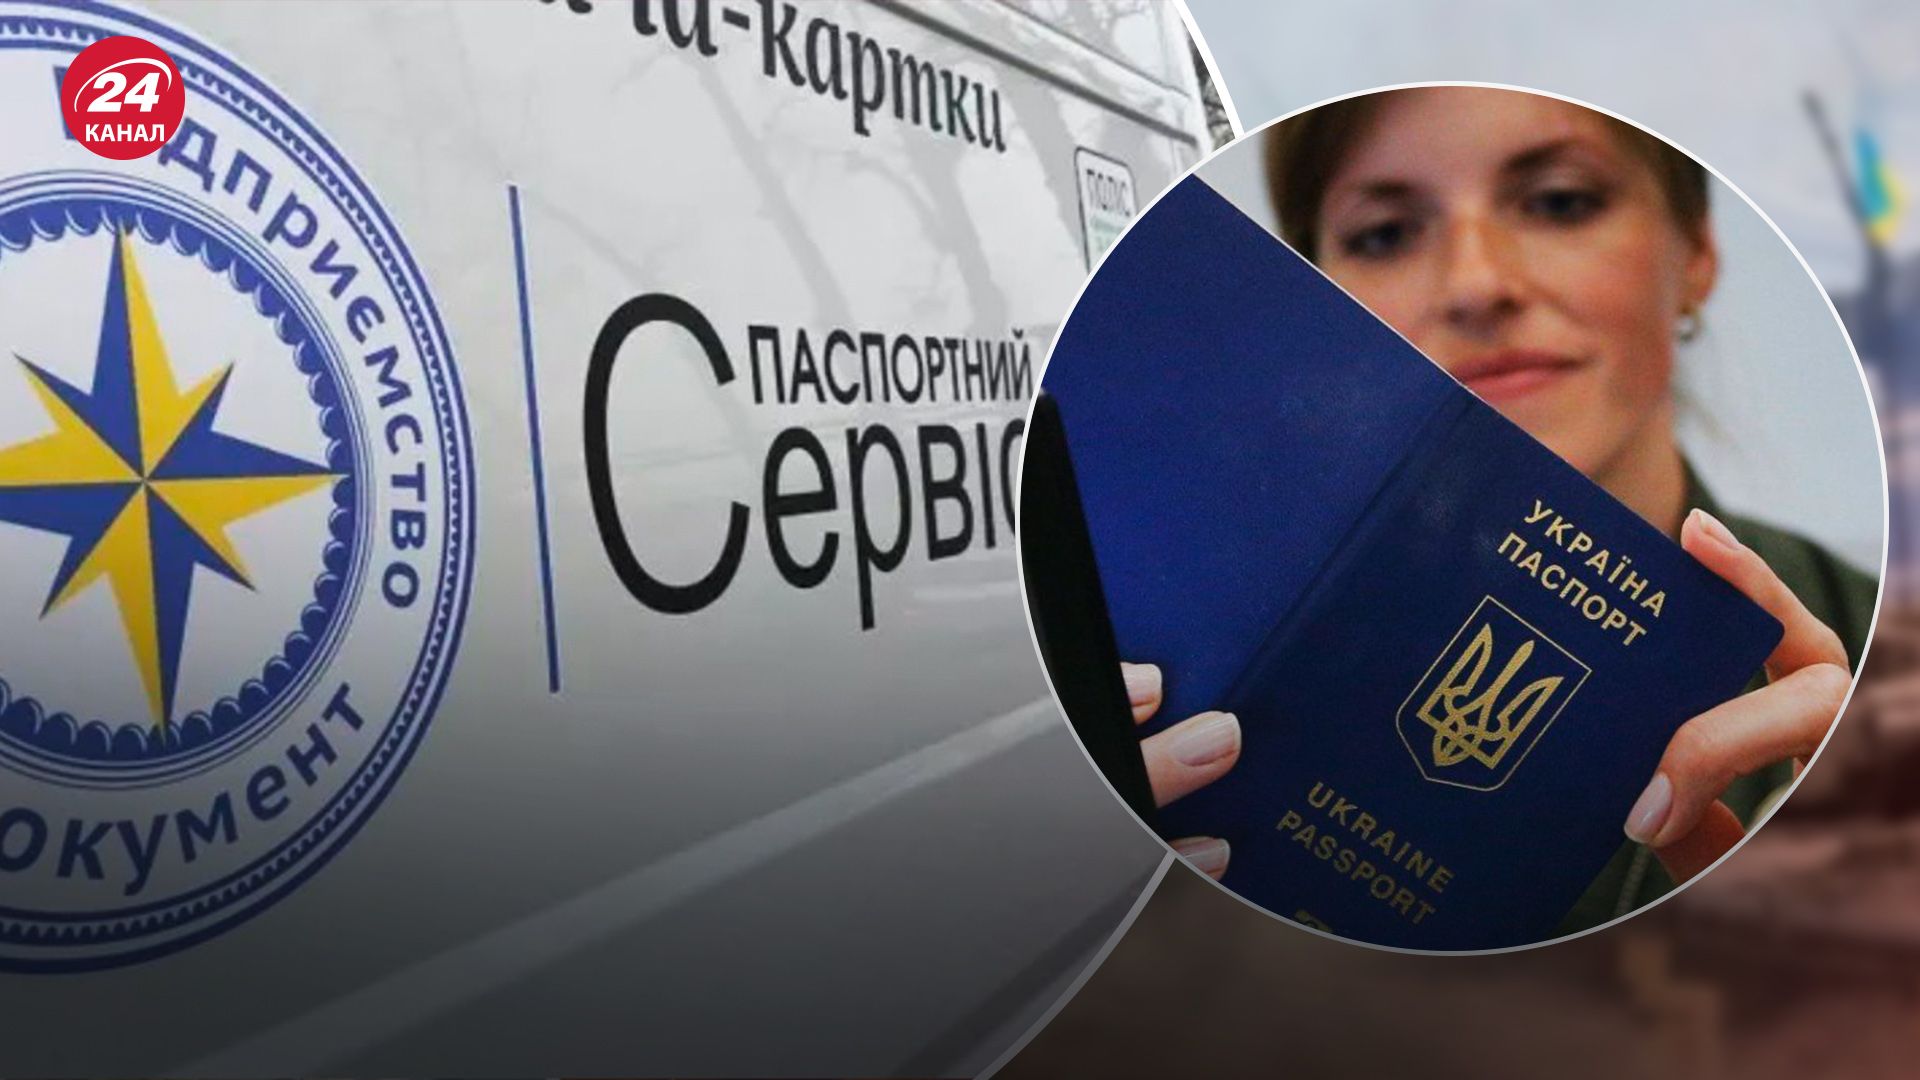 Работу паспортного сервиса "Документ" продлили еще на 6 месяцев